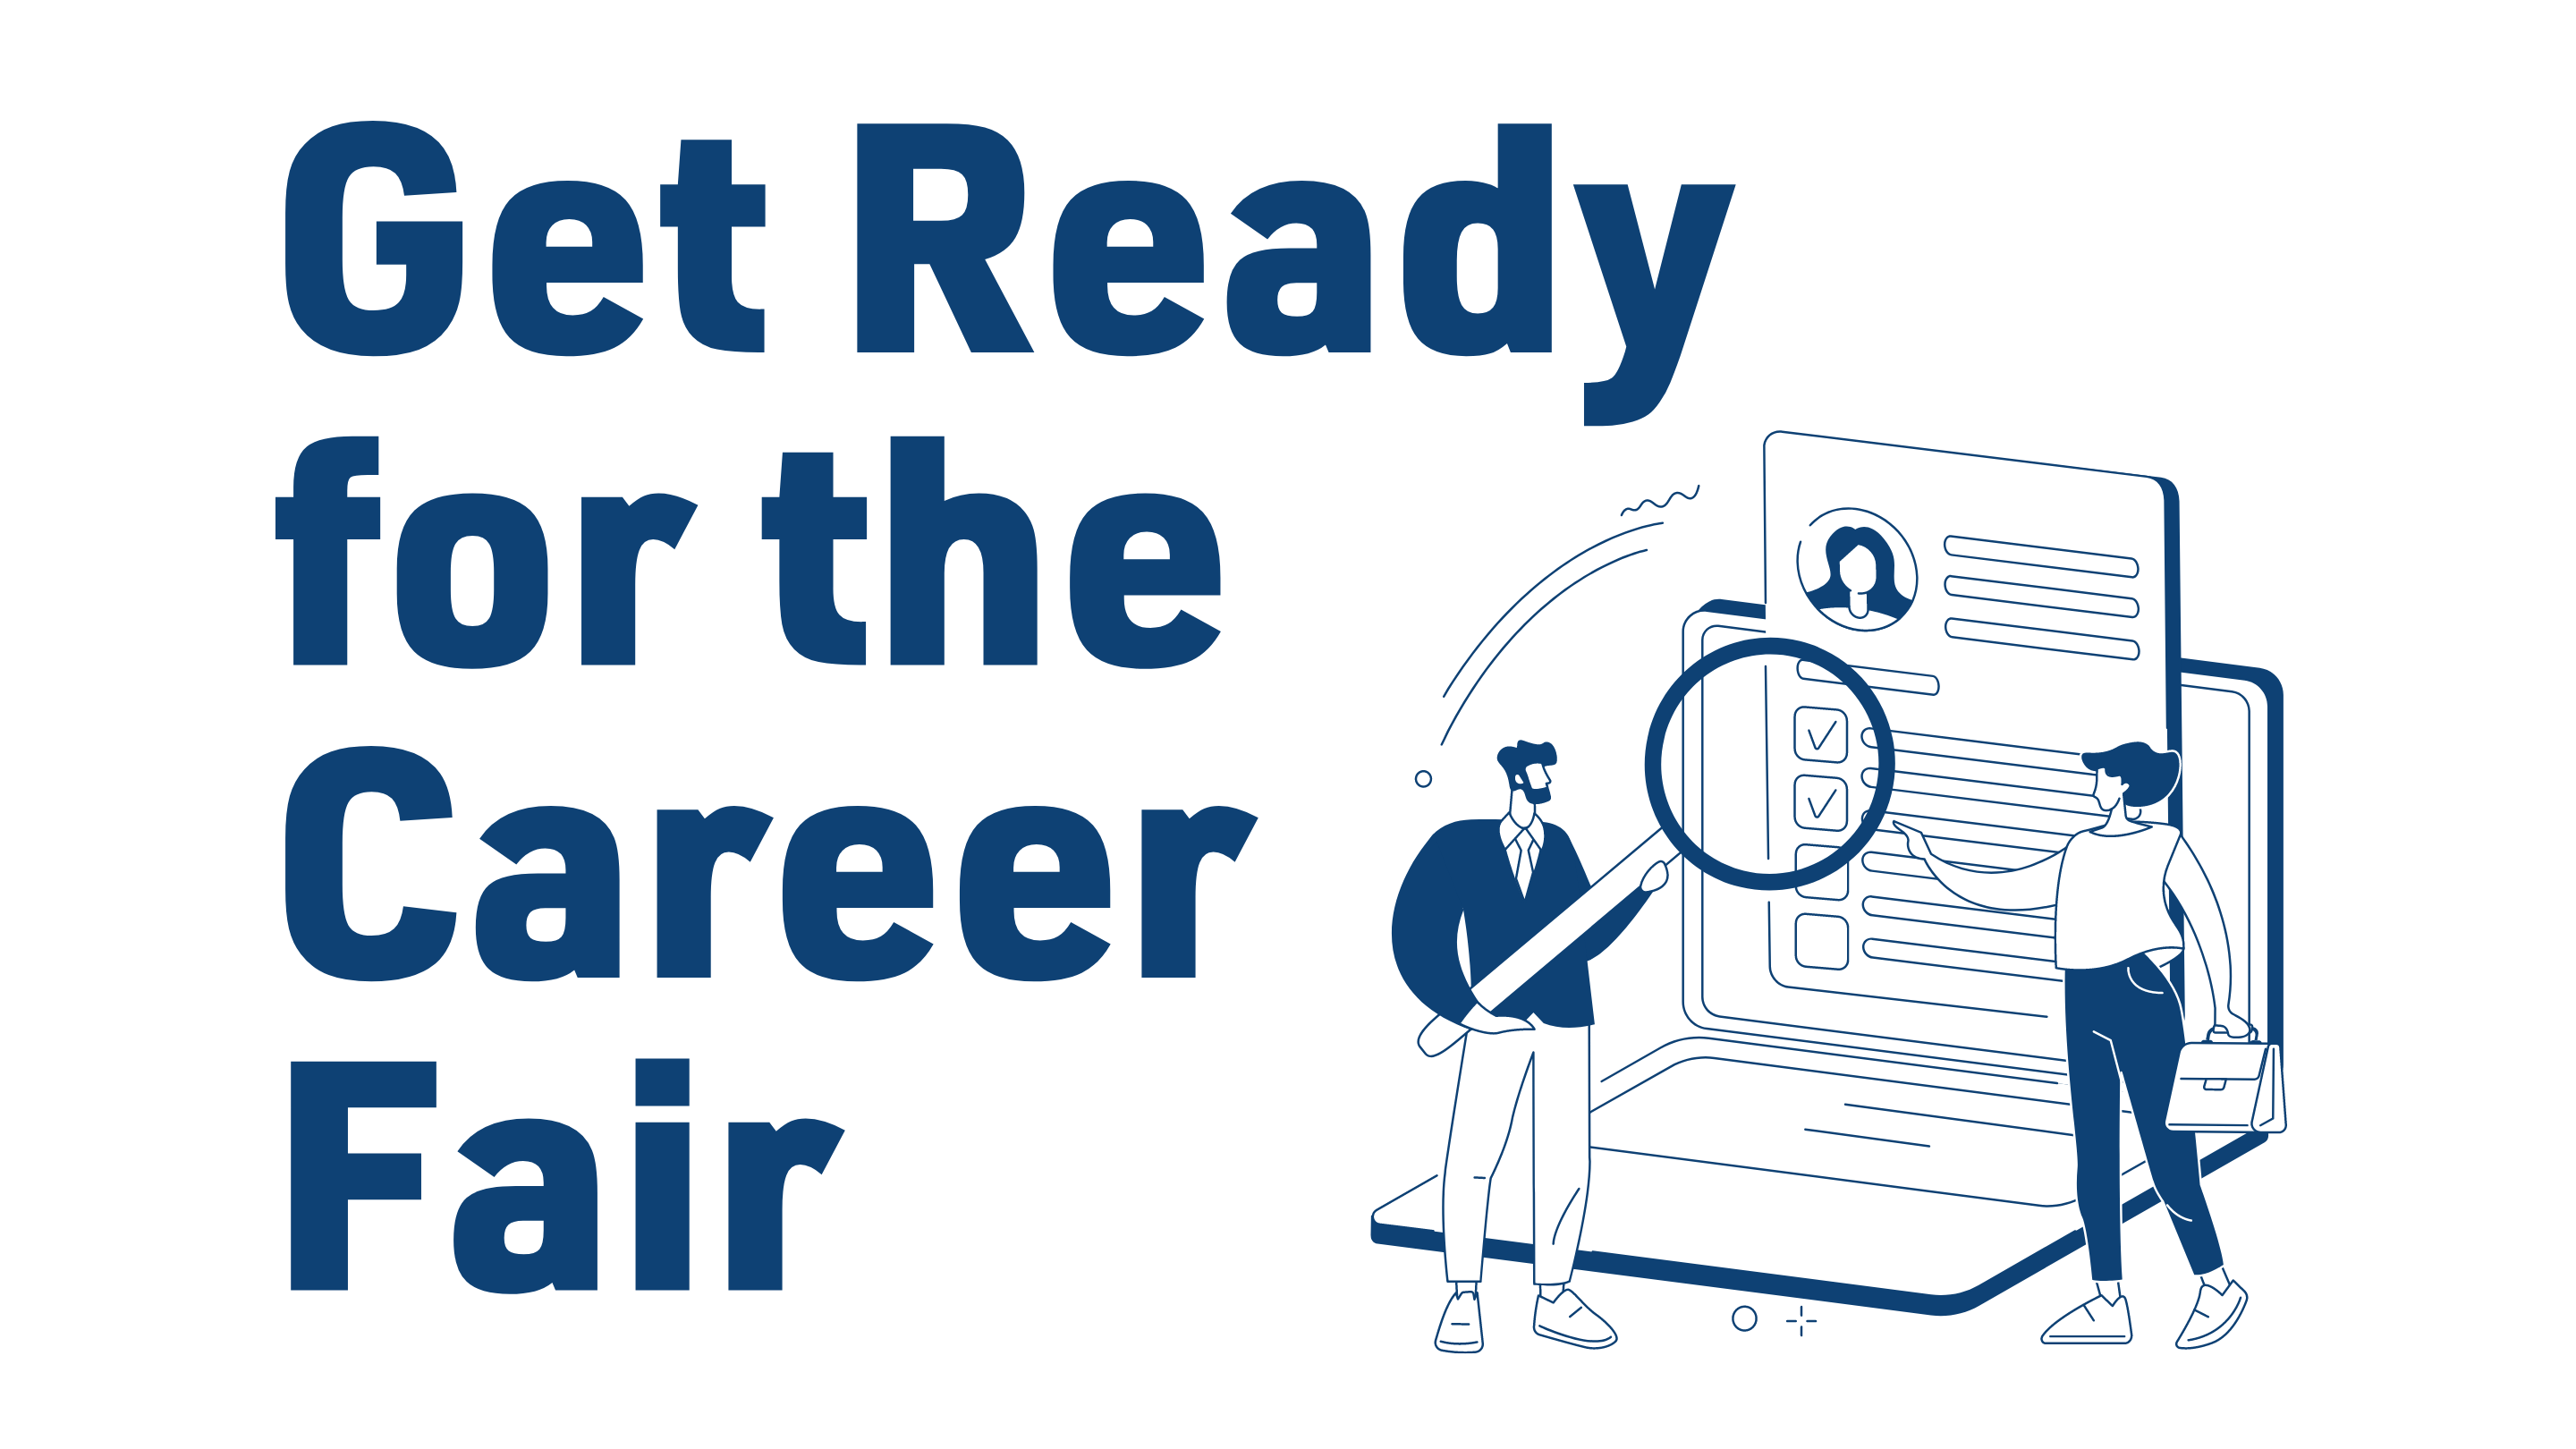 Get Ready for the Career Fair